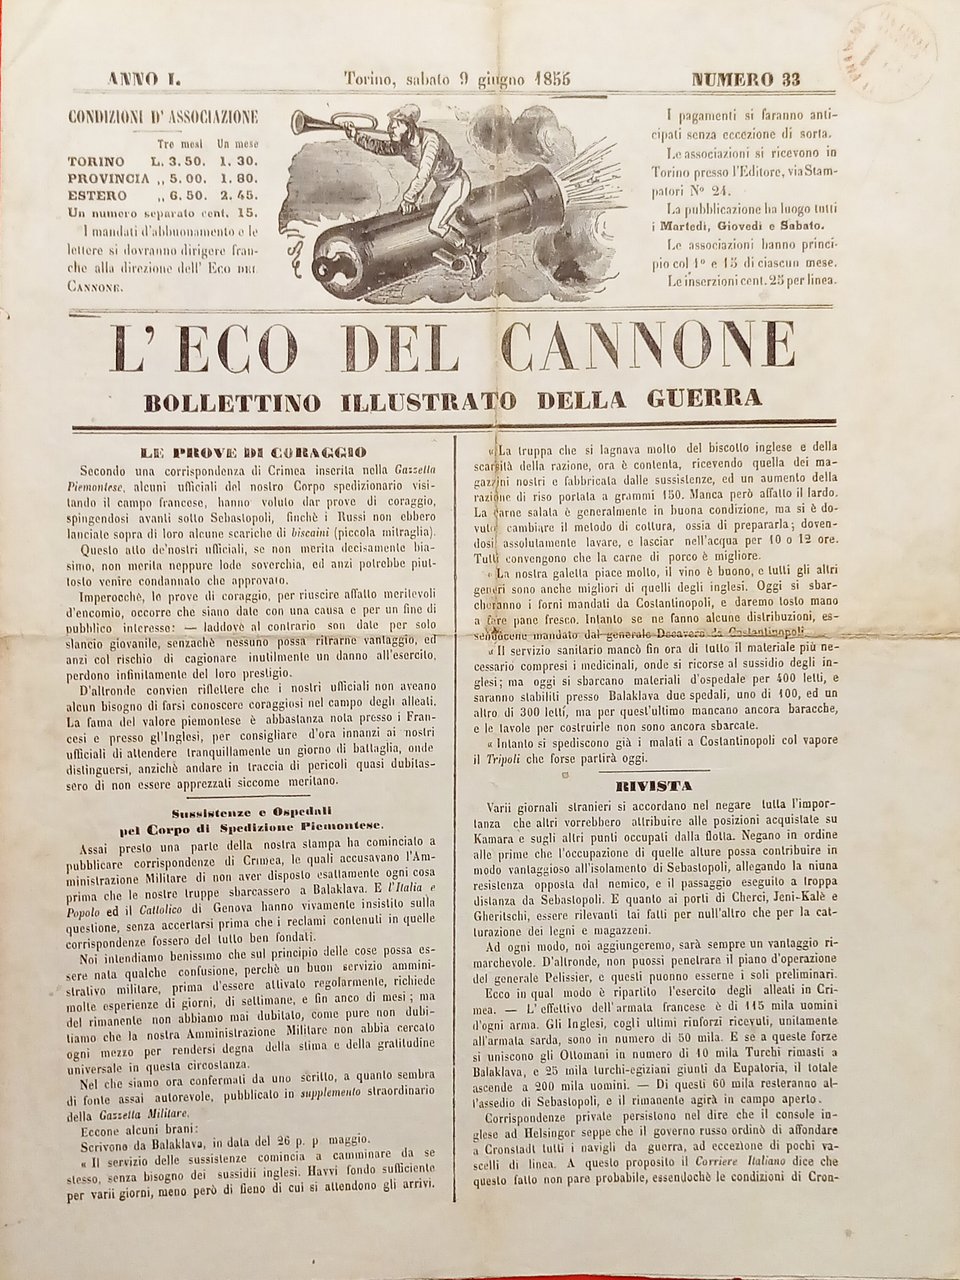 Bollettino Illustrato della Guerra - L'Eco del Cannone N. 33 …